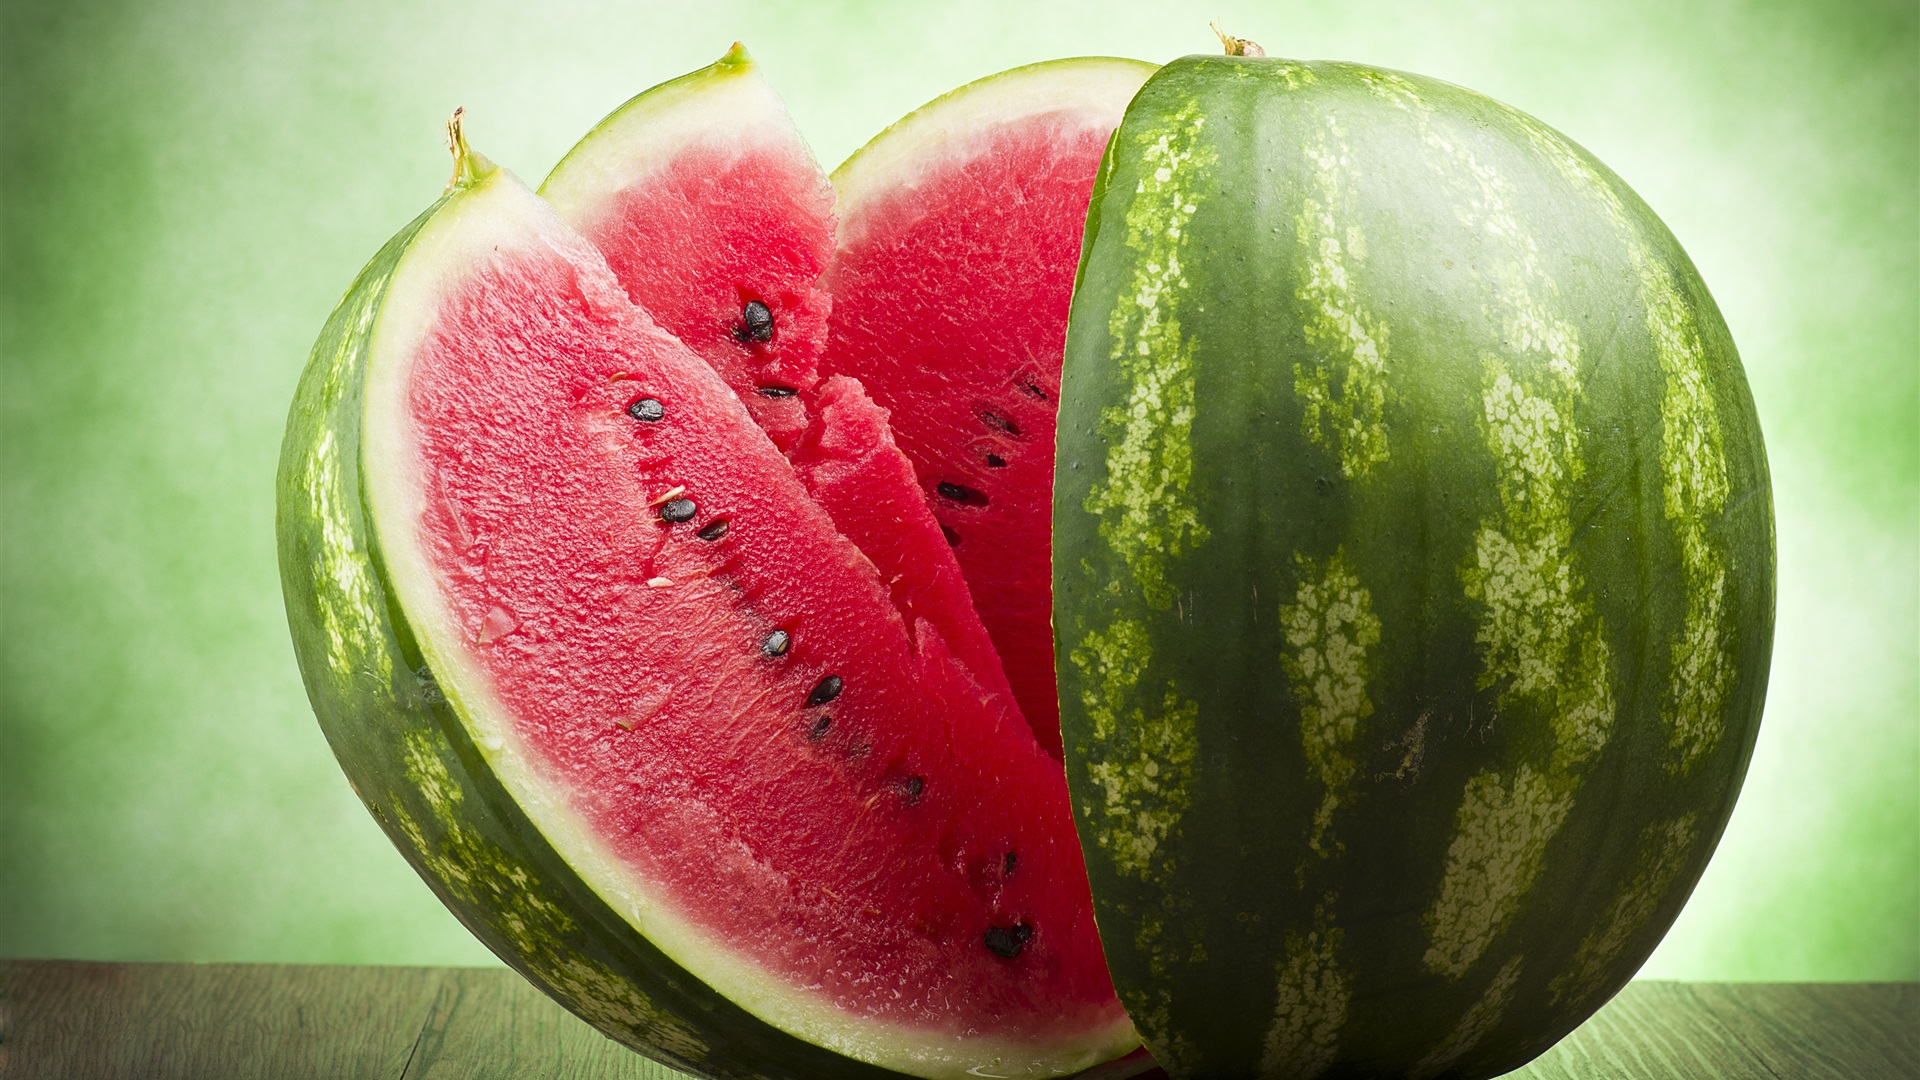 Propriedades e benefícios da melancia